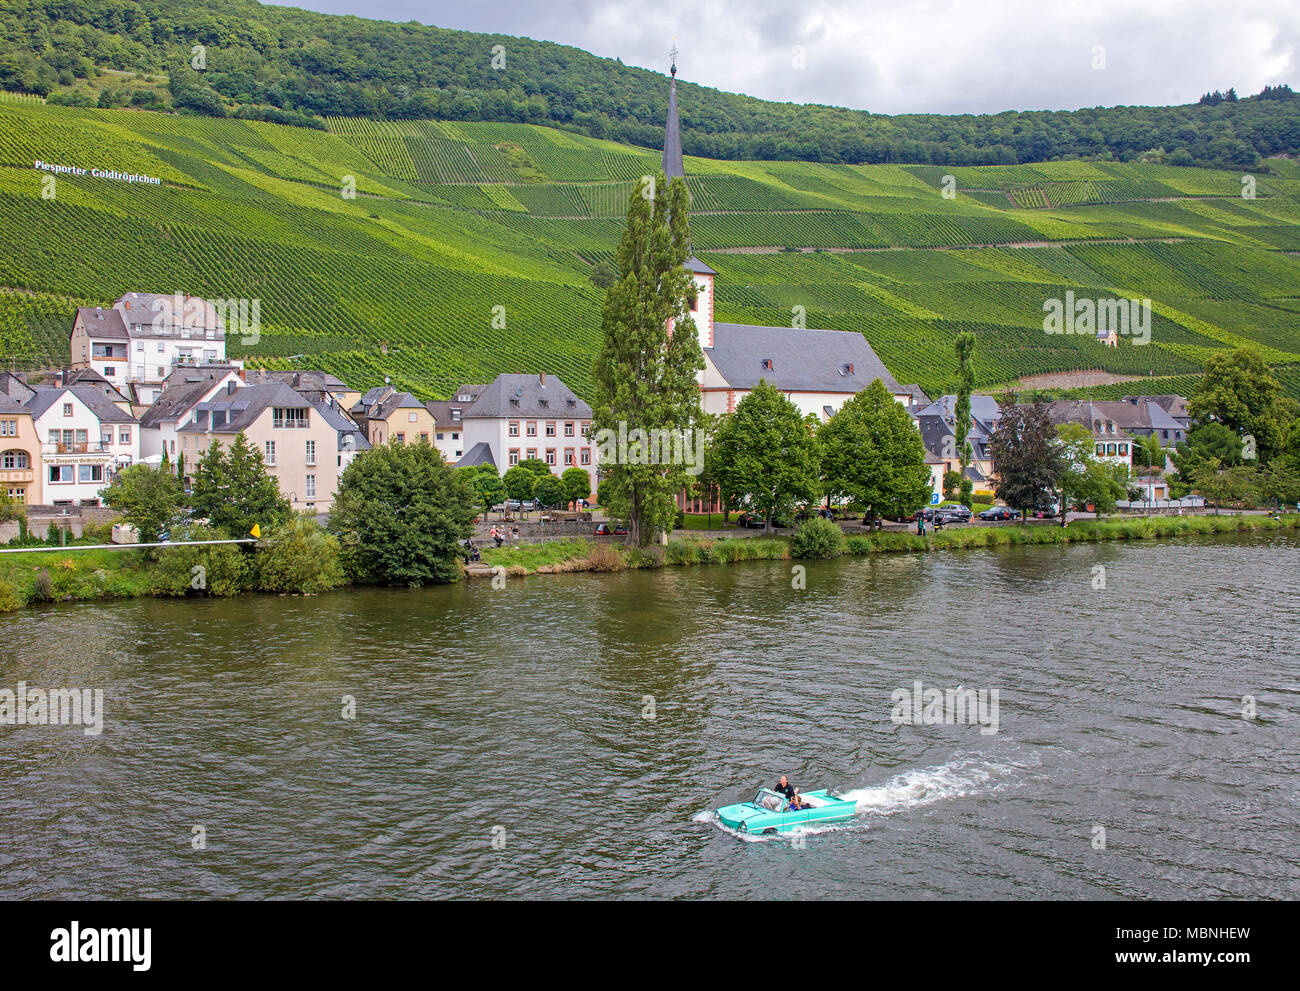 Amphic auto, un tedesco veicolo anfibio la guida sul fiume Moselle in Piesport, Renania-Palatinato, Germania Foto Stock